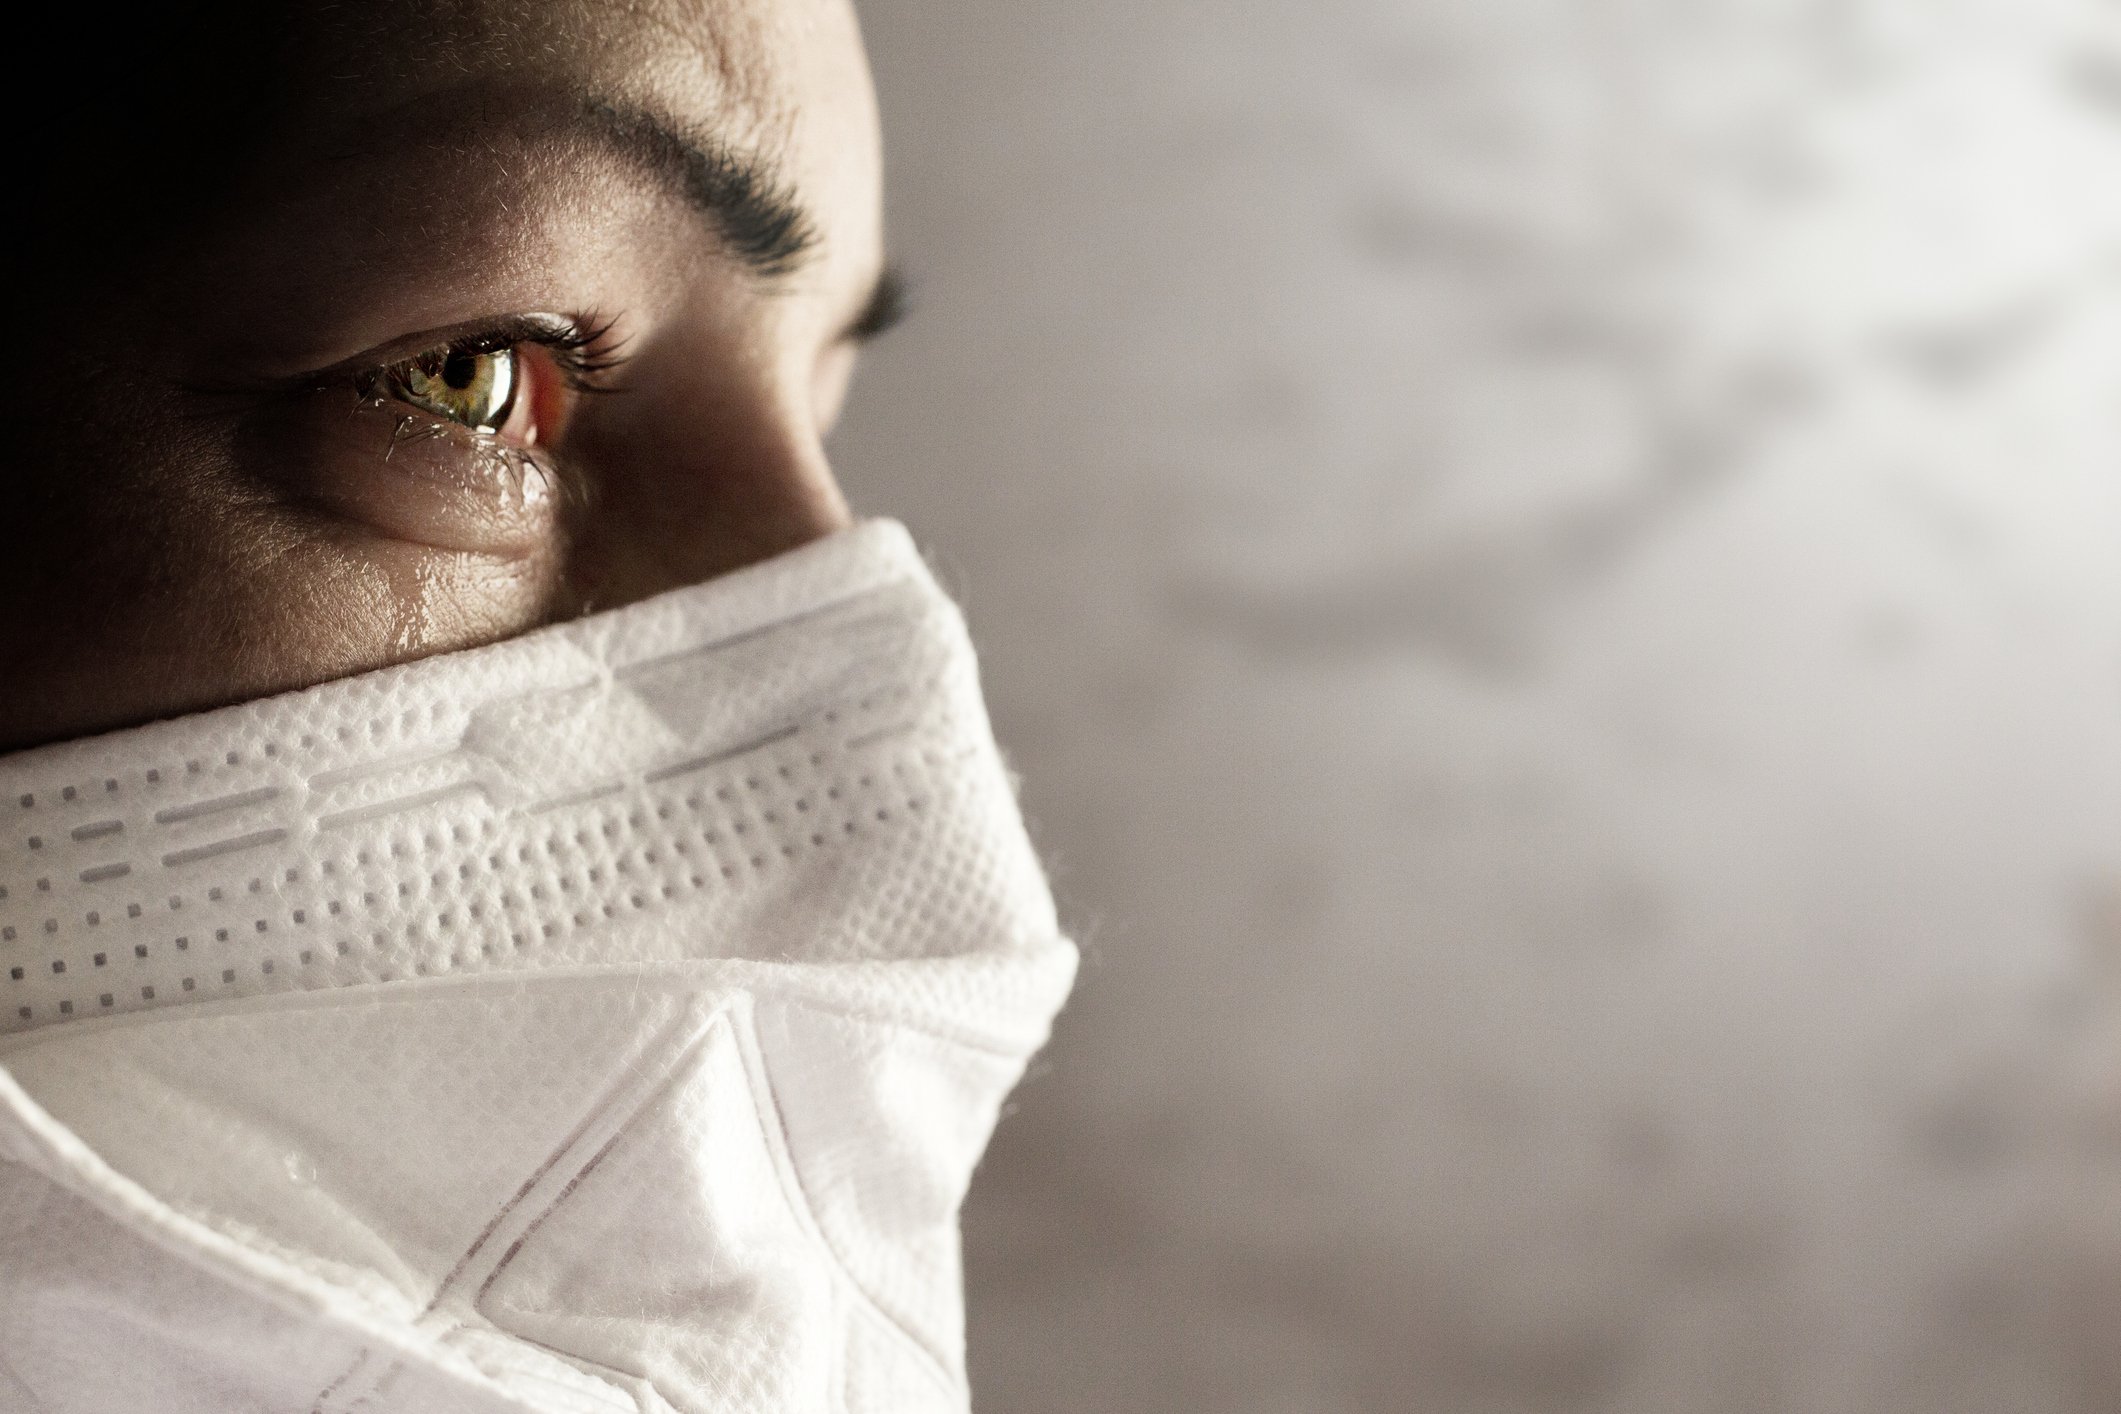 Frauen mit Sicherheitsmaske vor Coronavirus. Covid-19-Ausbruch auf der ganzen Welt | Quelle: Getty Images